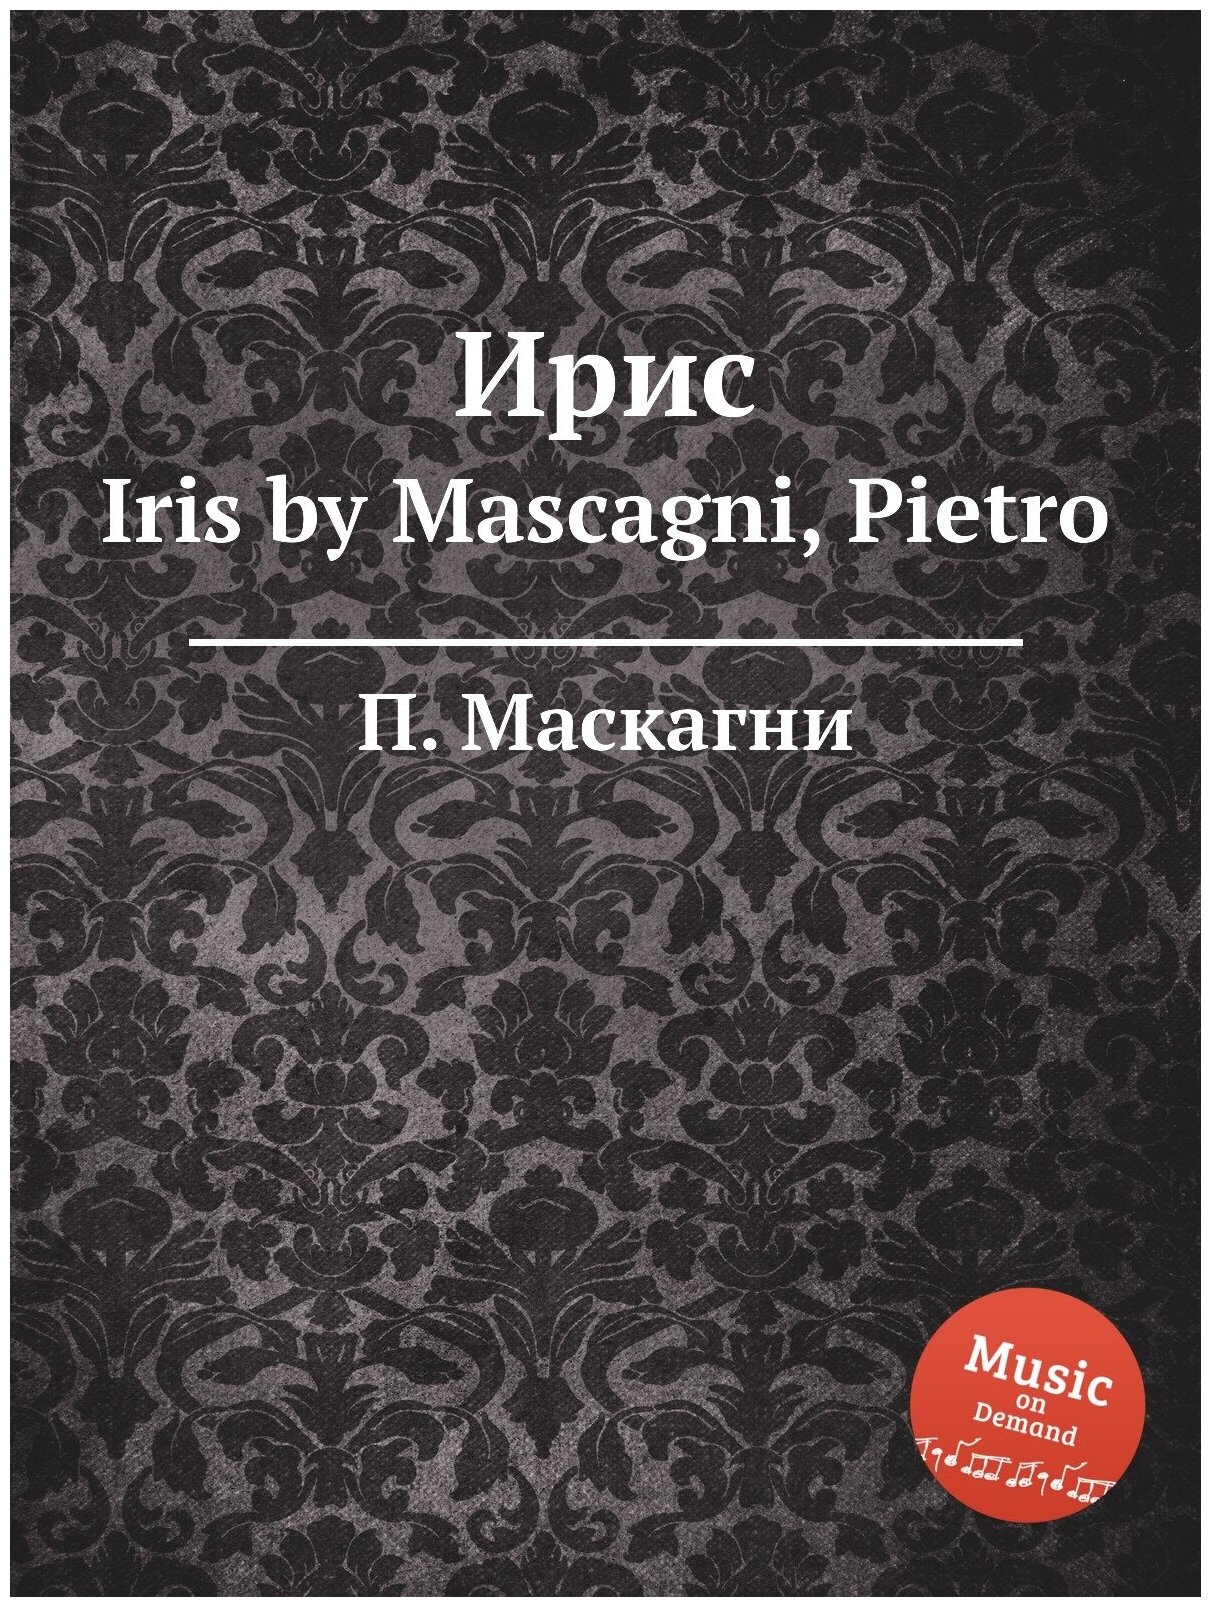 Ирис. Iris by Mascagni, Pietro